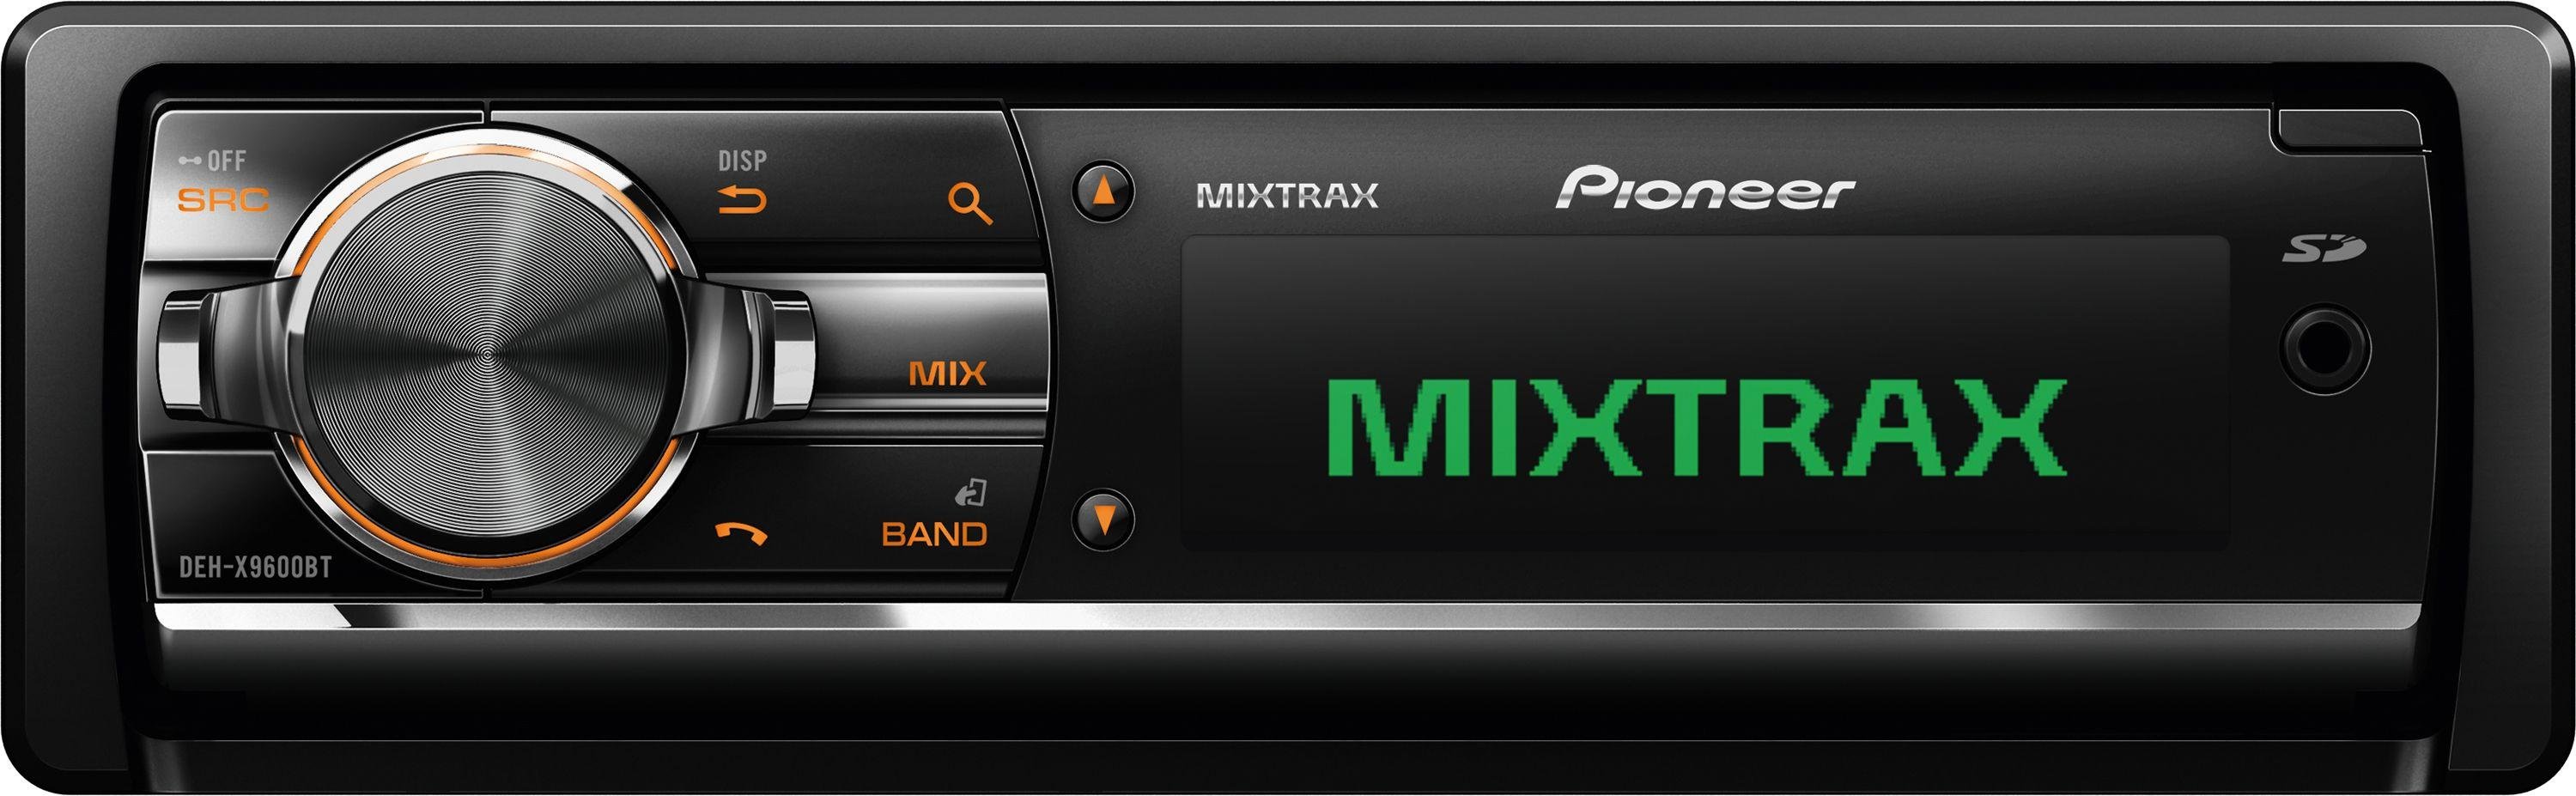 Pioneer DEH-X9600BT 200W FM/AM CD USB AUX Bluetooth Car Unit